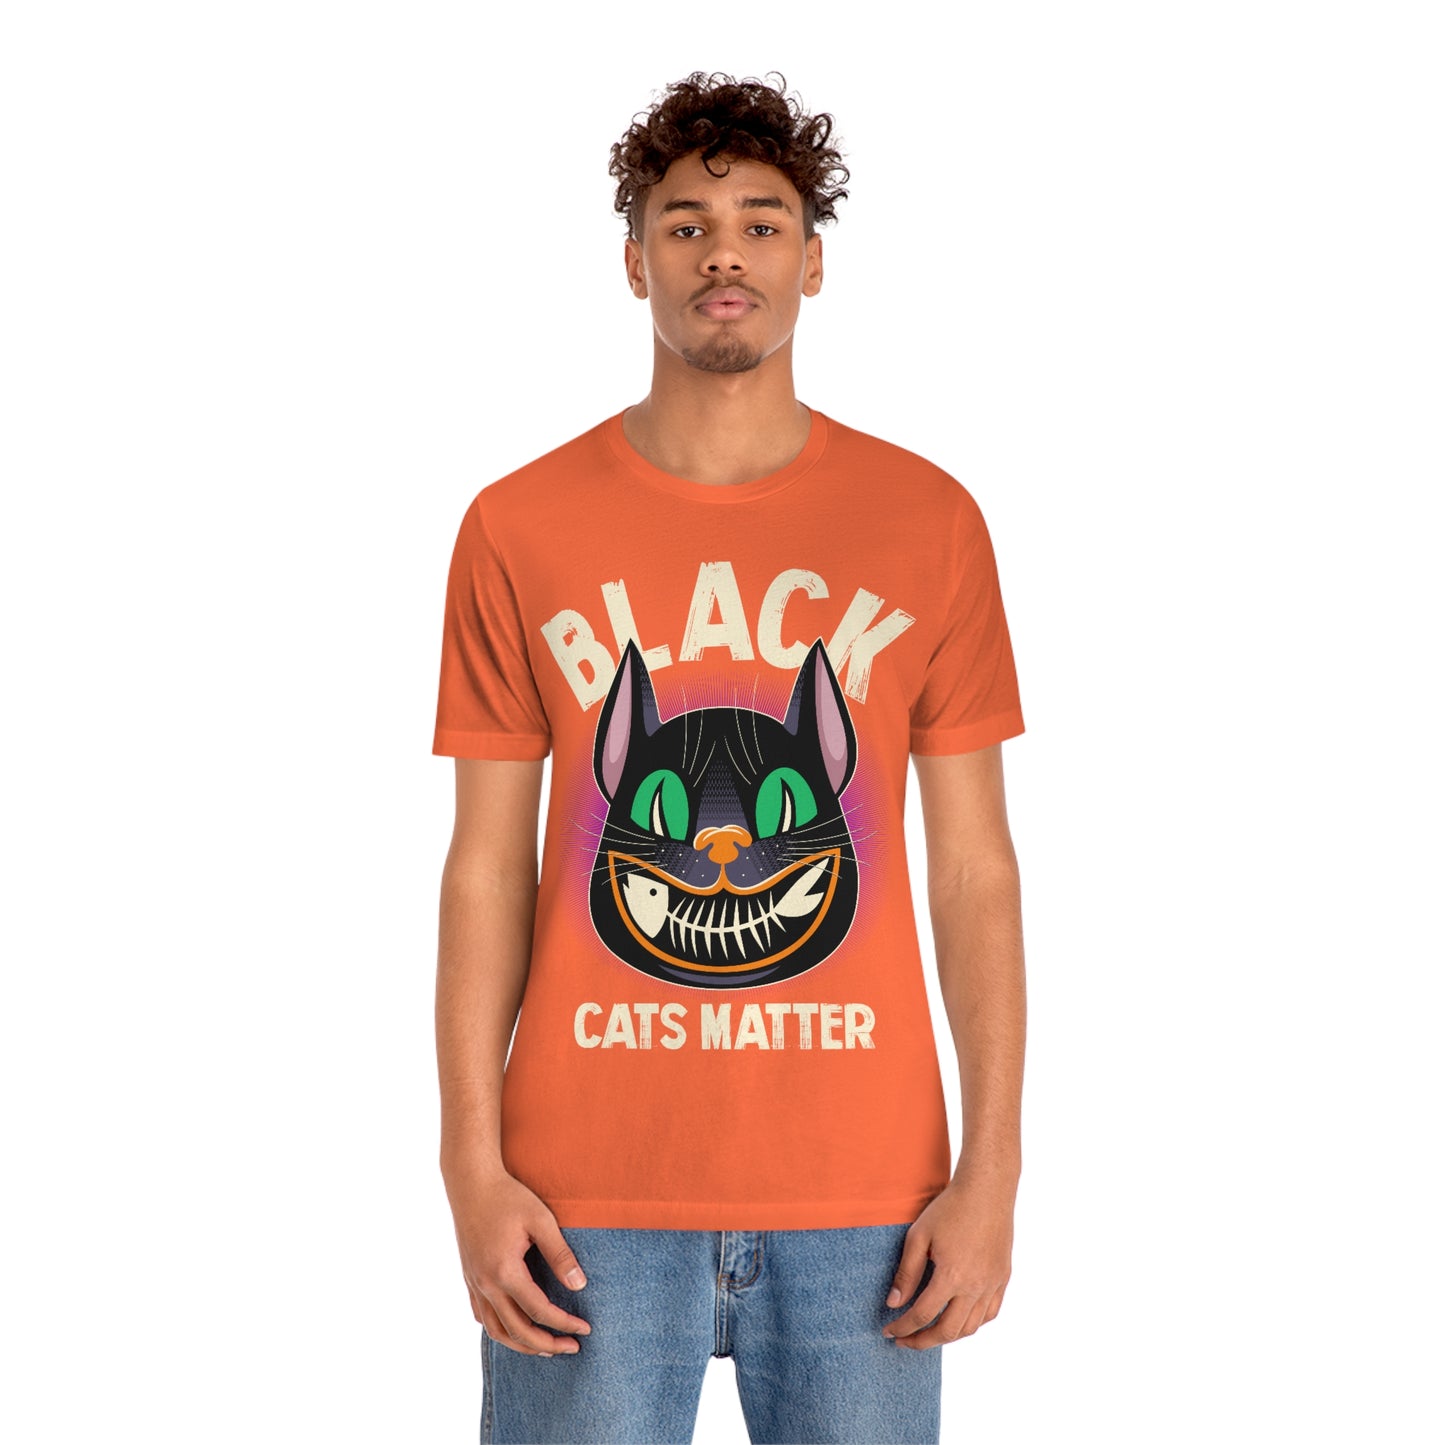 Black Cats Matter - Unisex T-Shirt